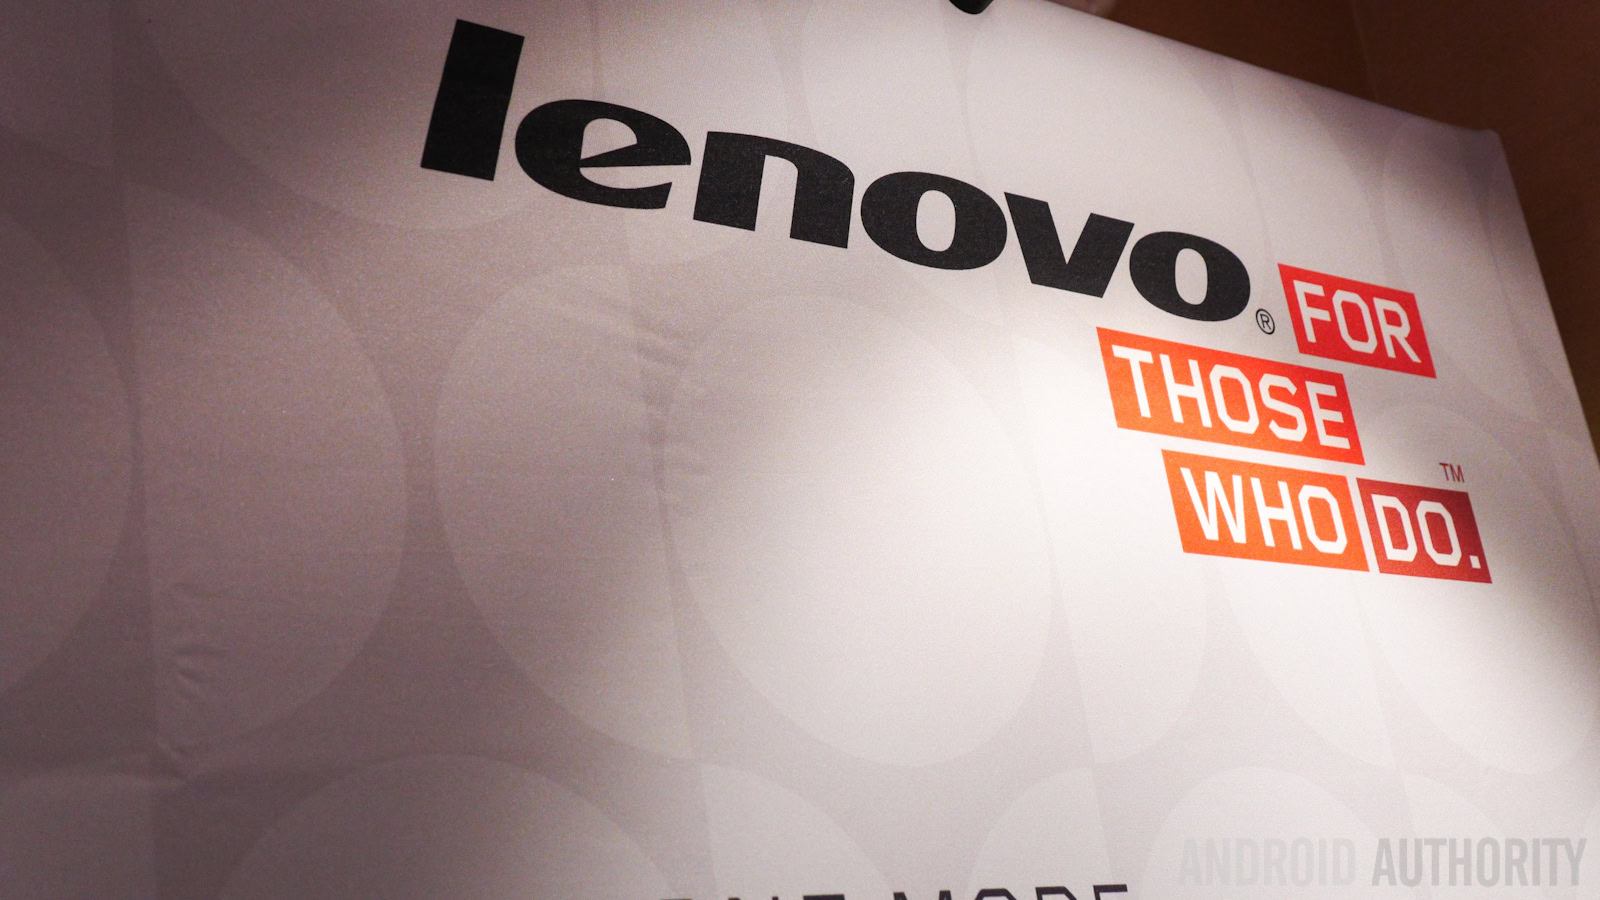 Lenovo brand 2014 ces